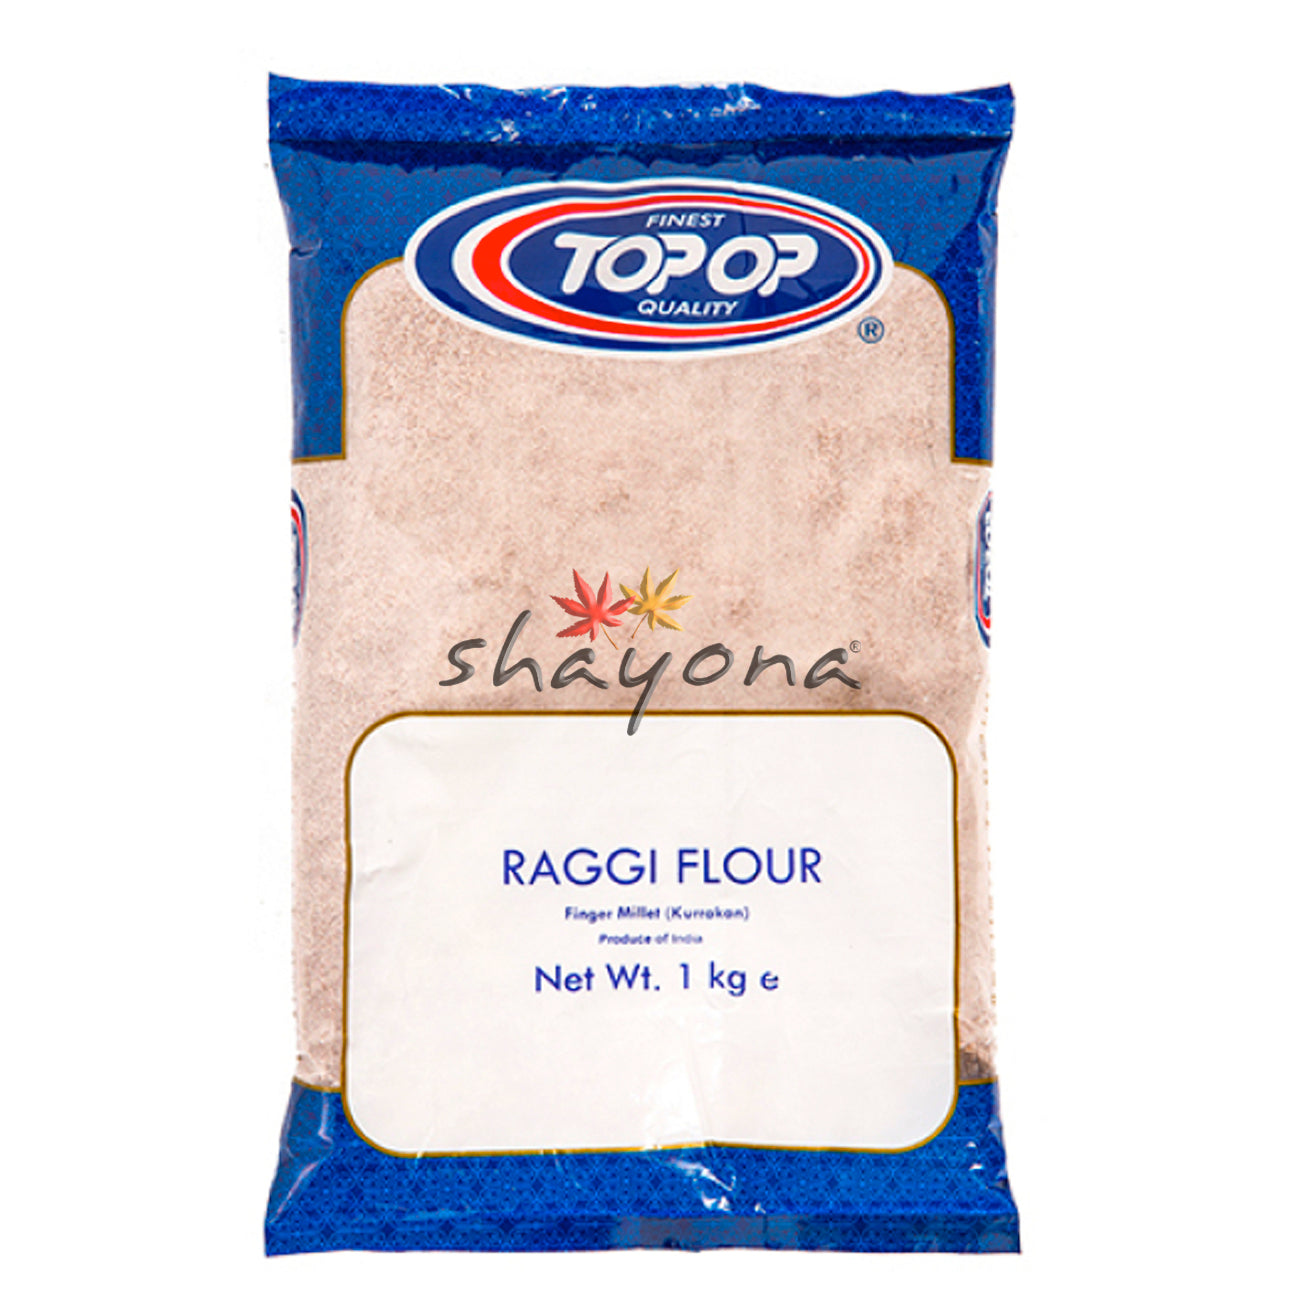 TopOp Raggi Flour